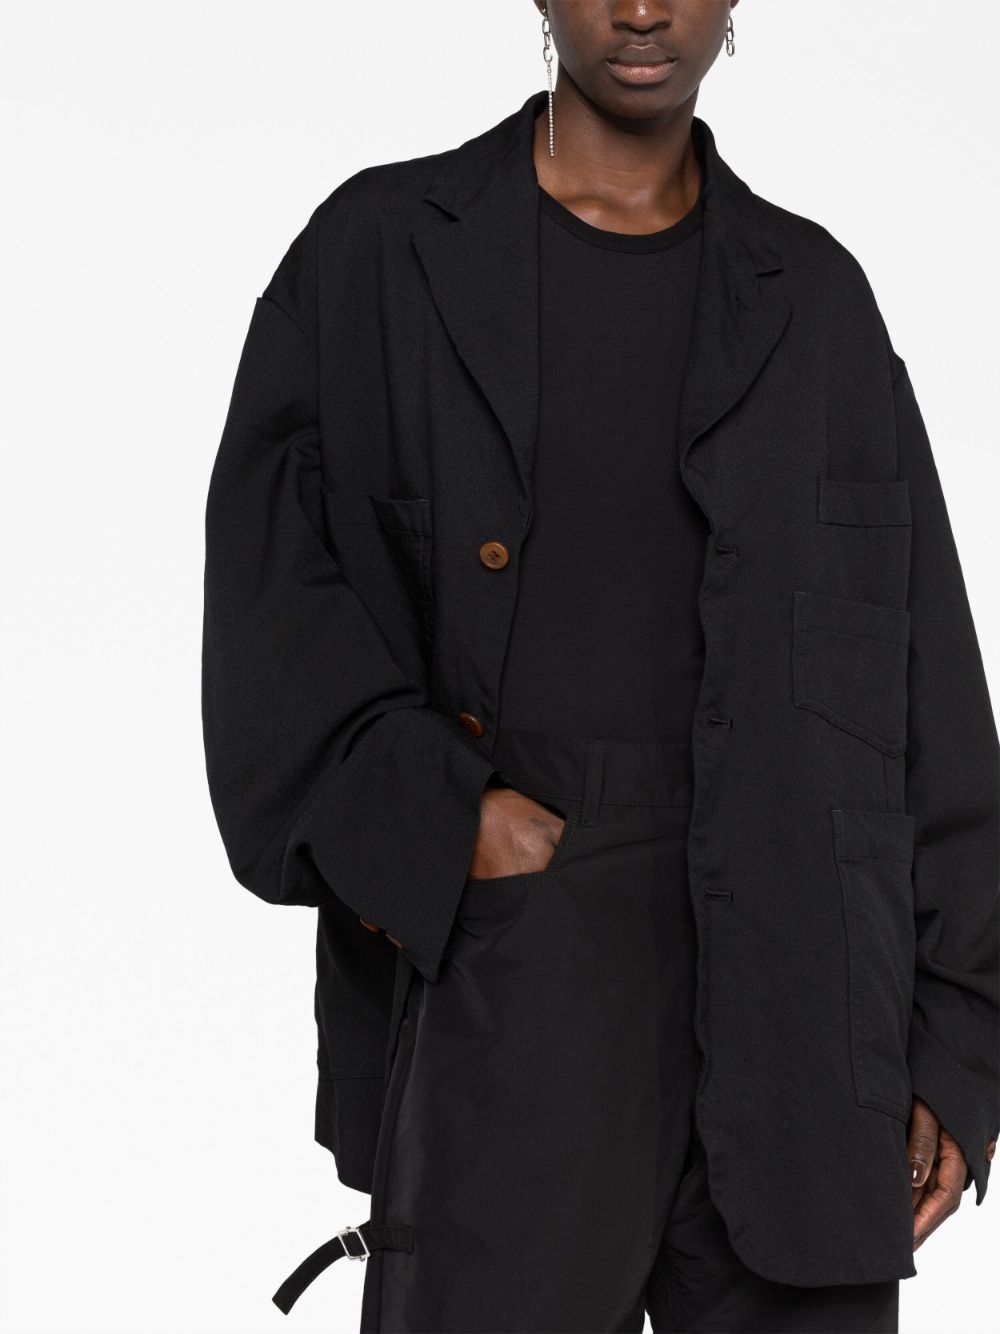 Áo khoác lông cừu đơn giản màu đen phong cách cho nam